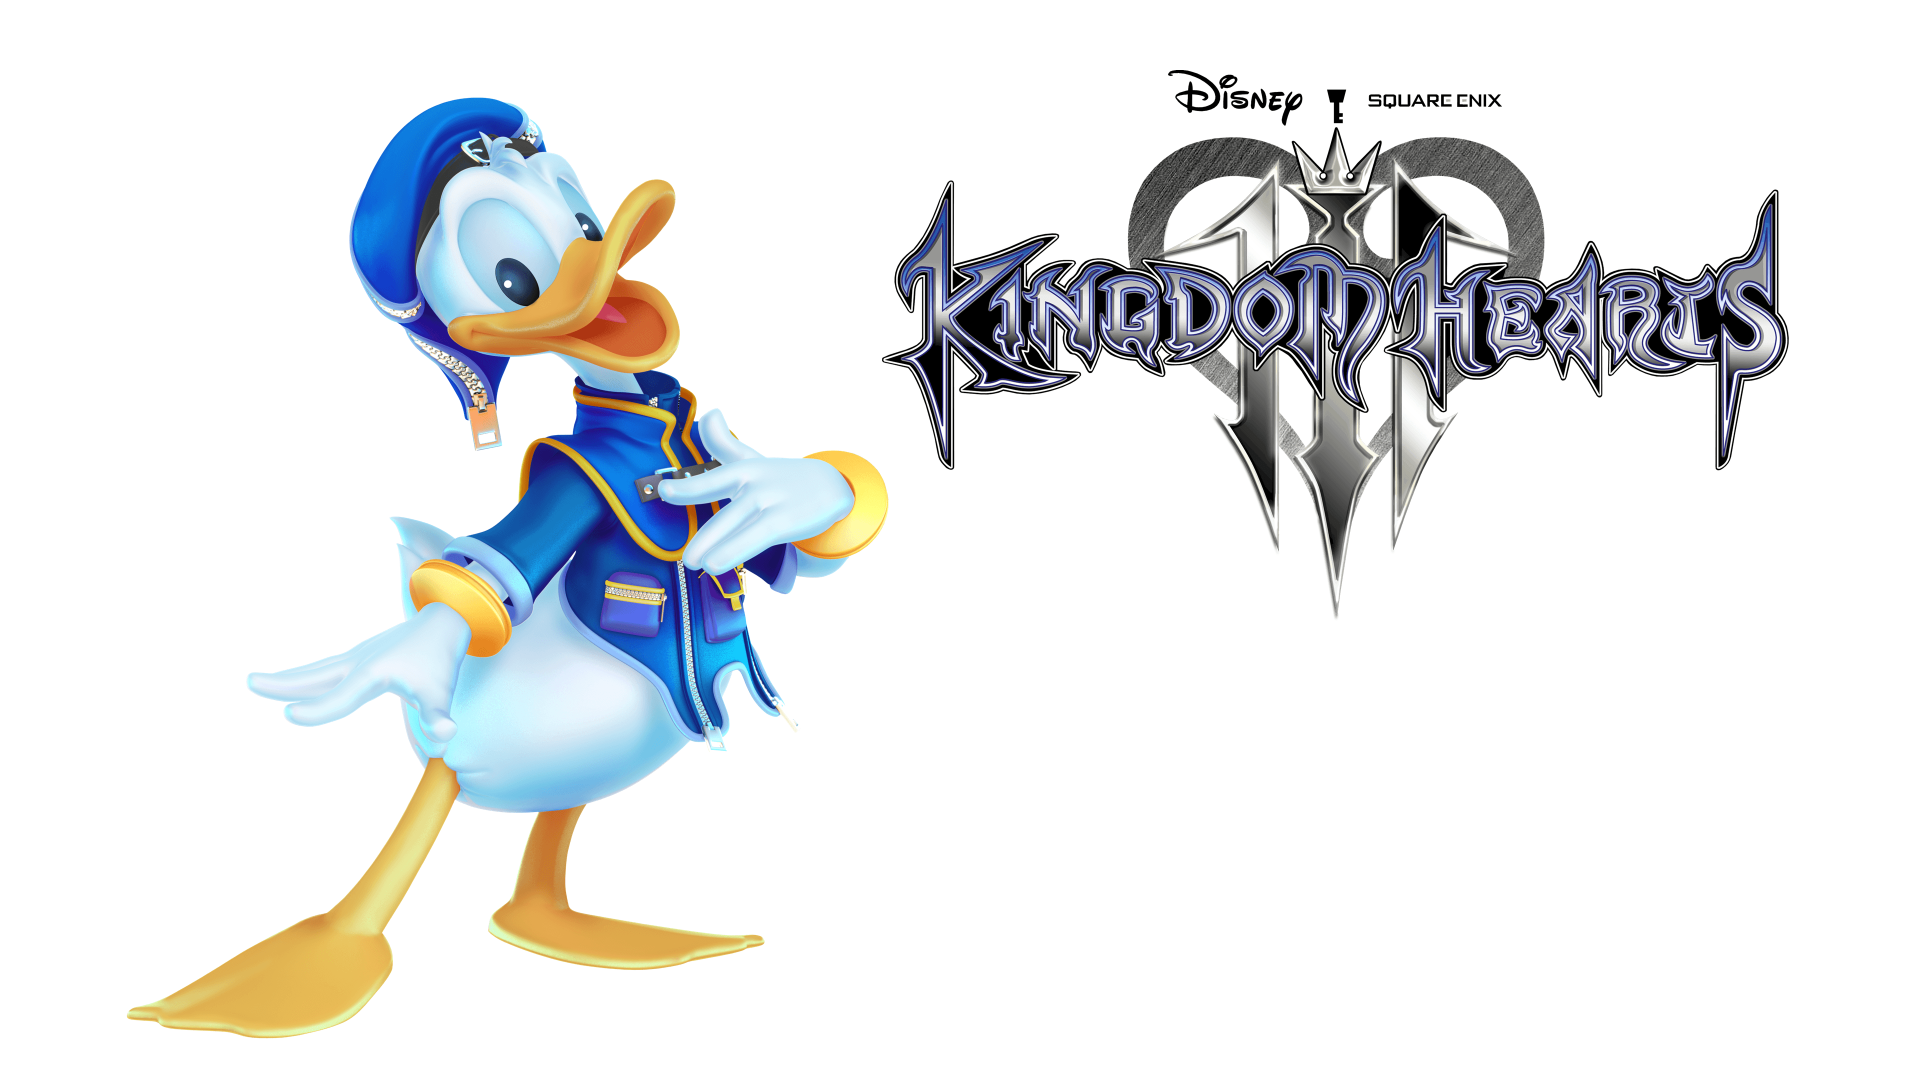 Дональд Дак персонаж компьютерной игры Kingdom Hearts III, 2019